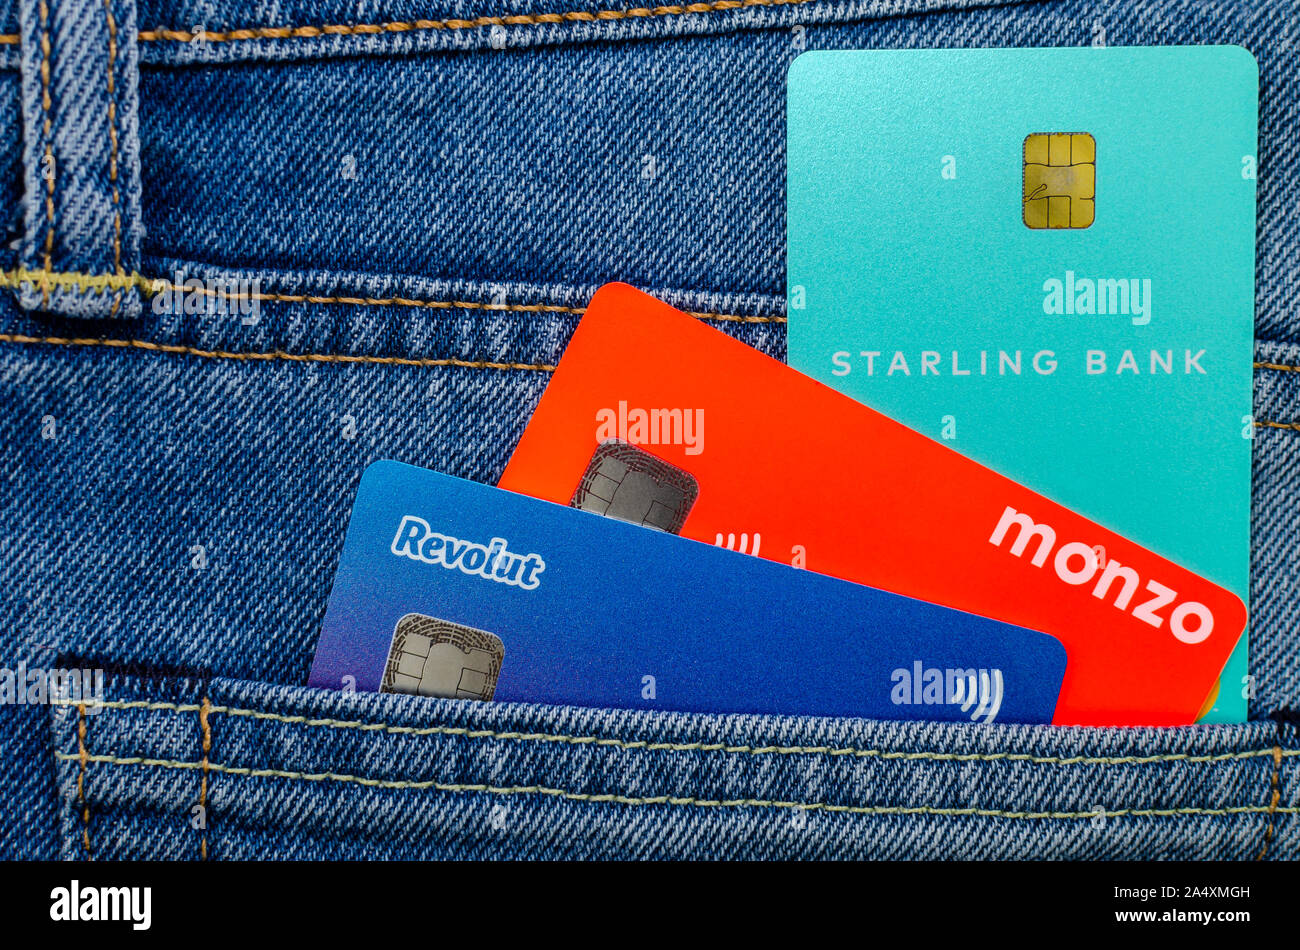 L'Monzo, Revolut Starling et cartes bancaires coller à partir de la même poche de jeans. Concept pour un concours sur l'aileron, tech. Photo mise à plat. Banque D'Images